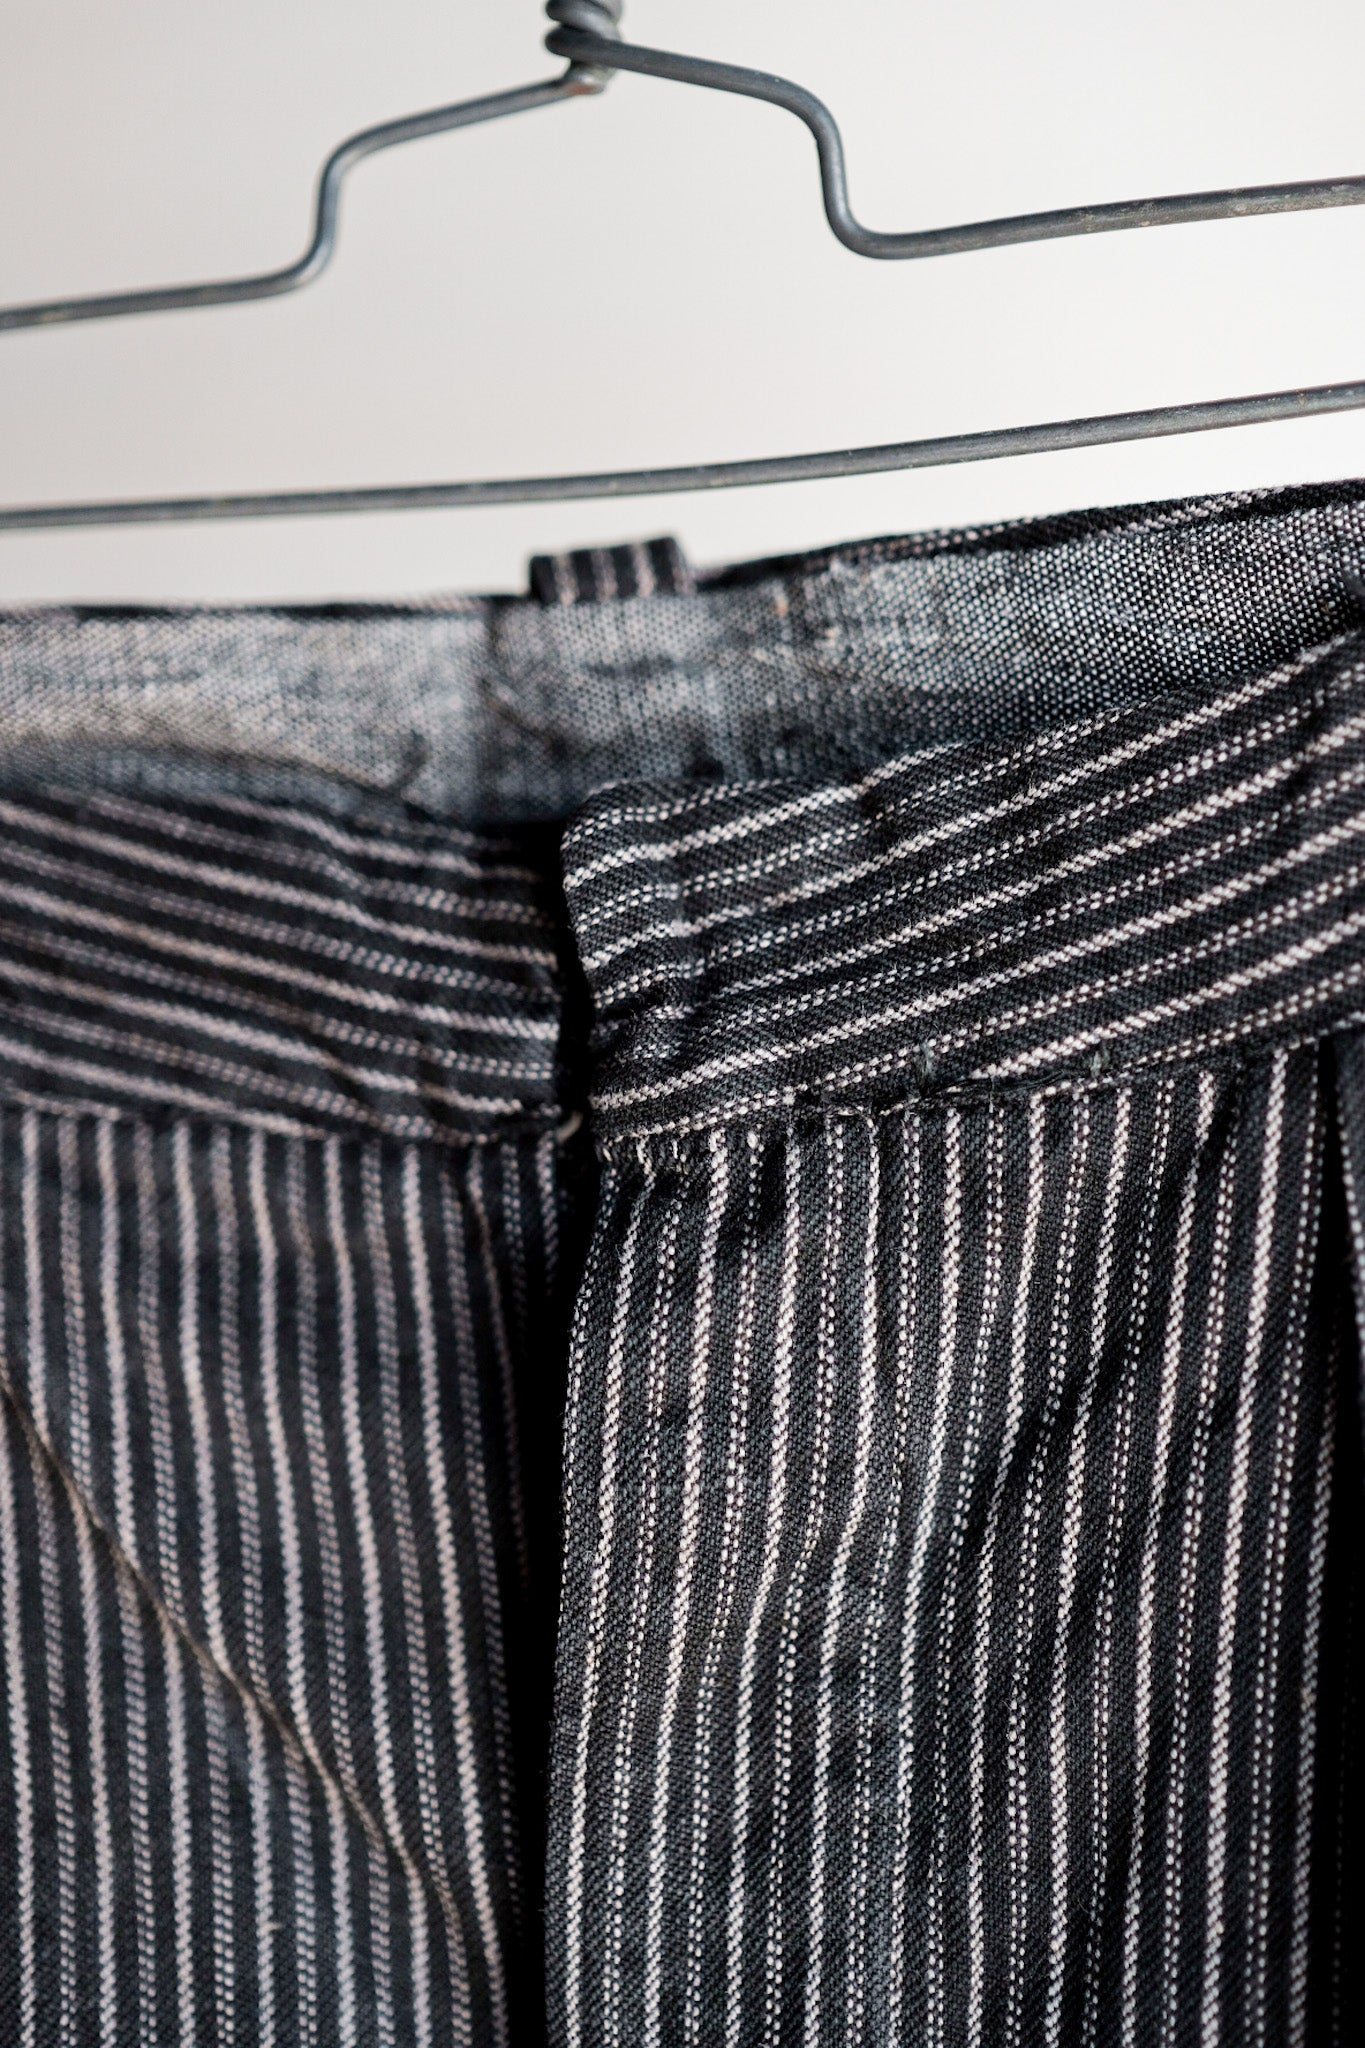 【〜40年代】法國復古棉花條紋褲子